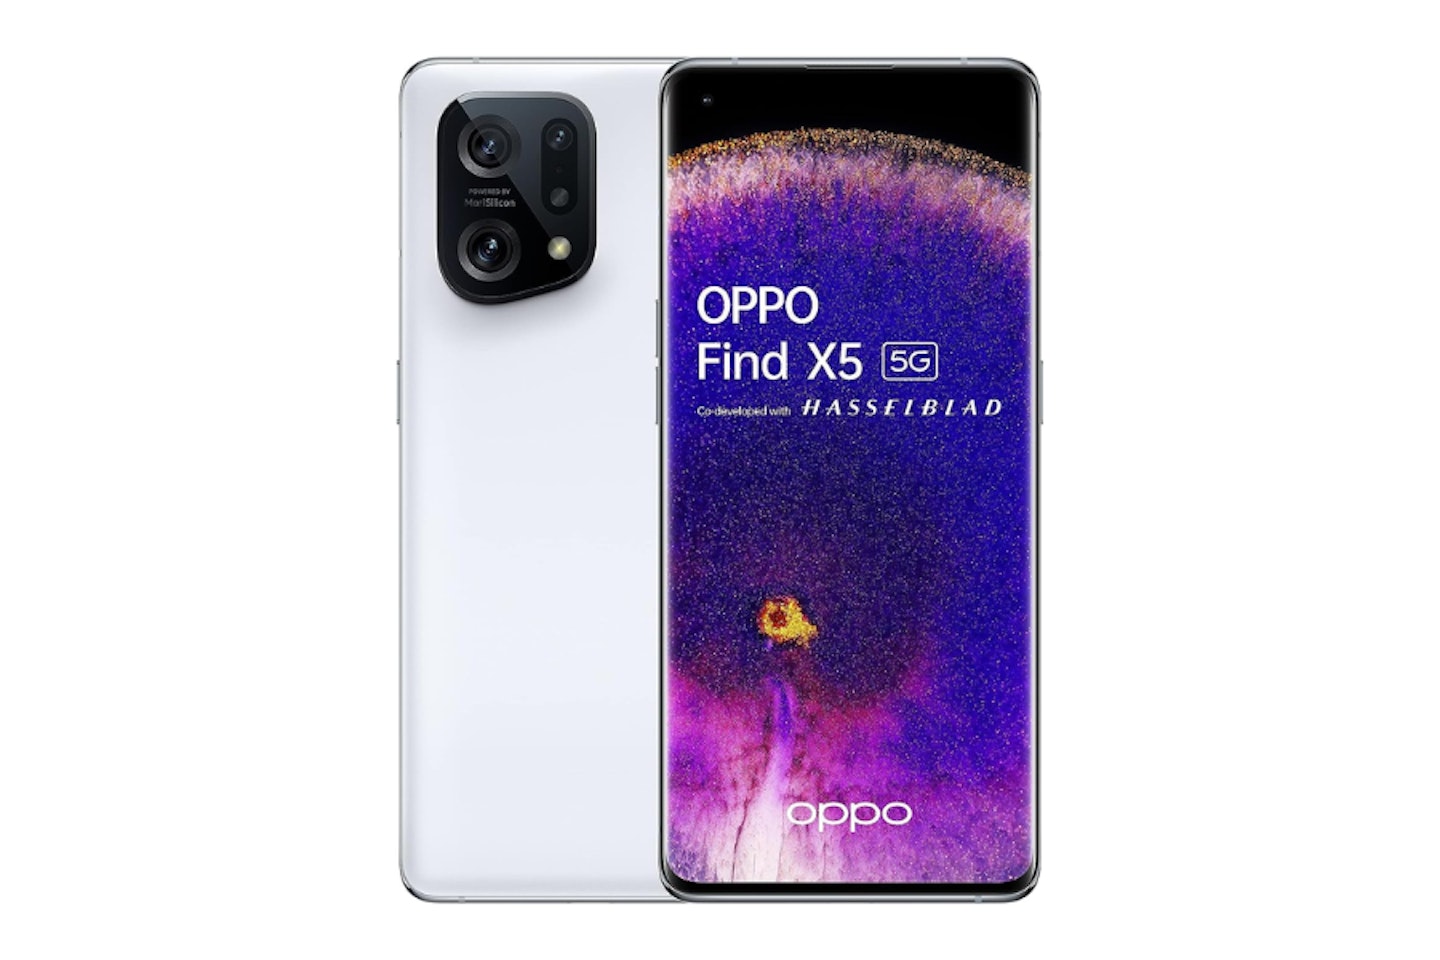  Oppo Find X5 5G - Smartphone